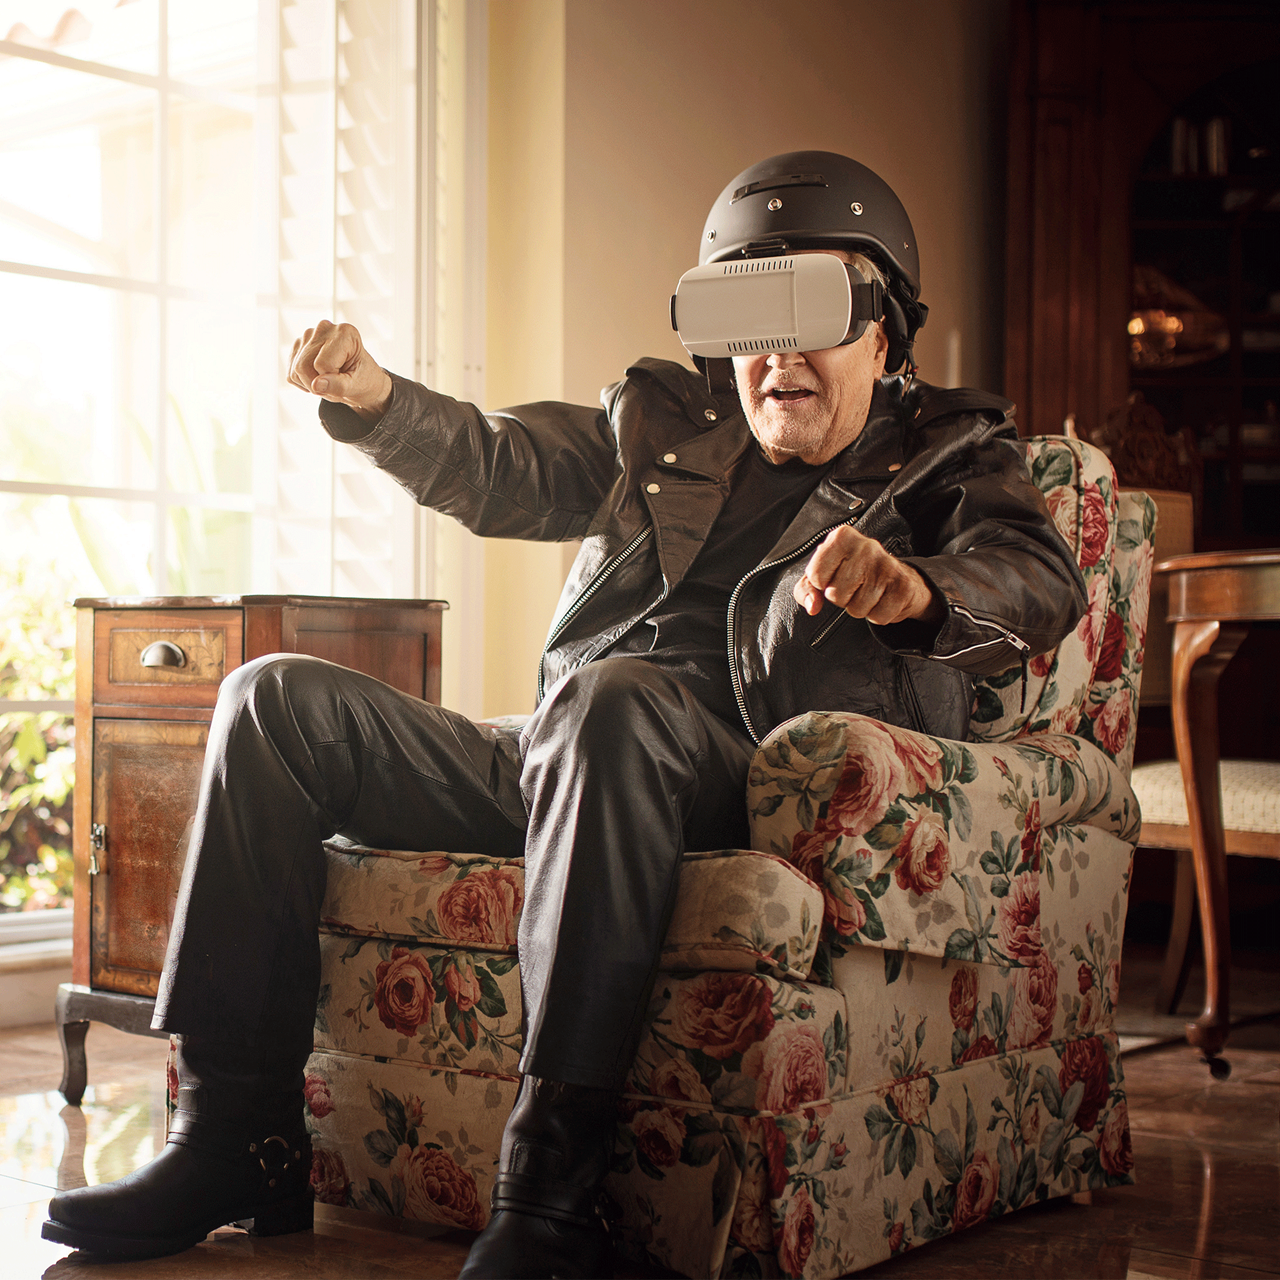 Opa in Lederkombi sitzend auf der Couch mit VR-Brille und am motorradfahren